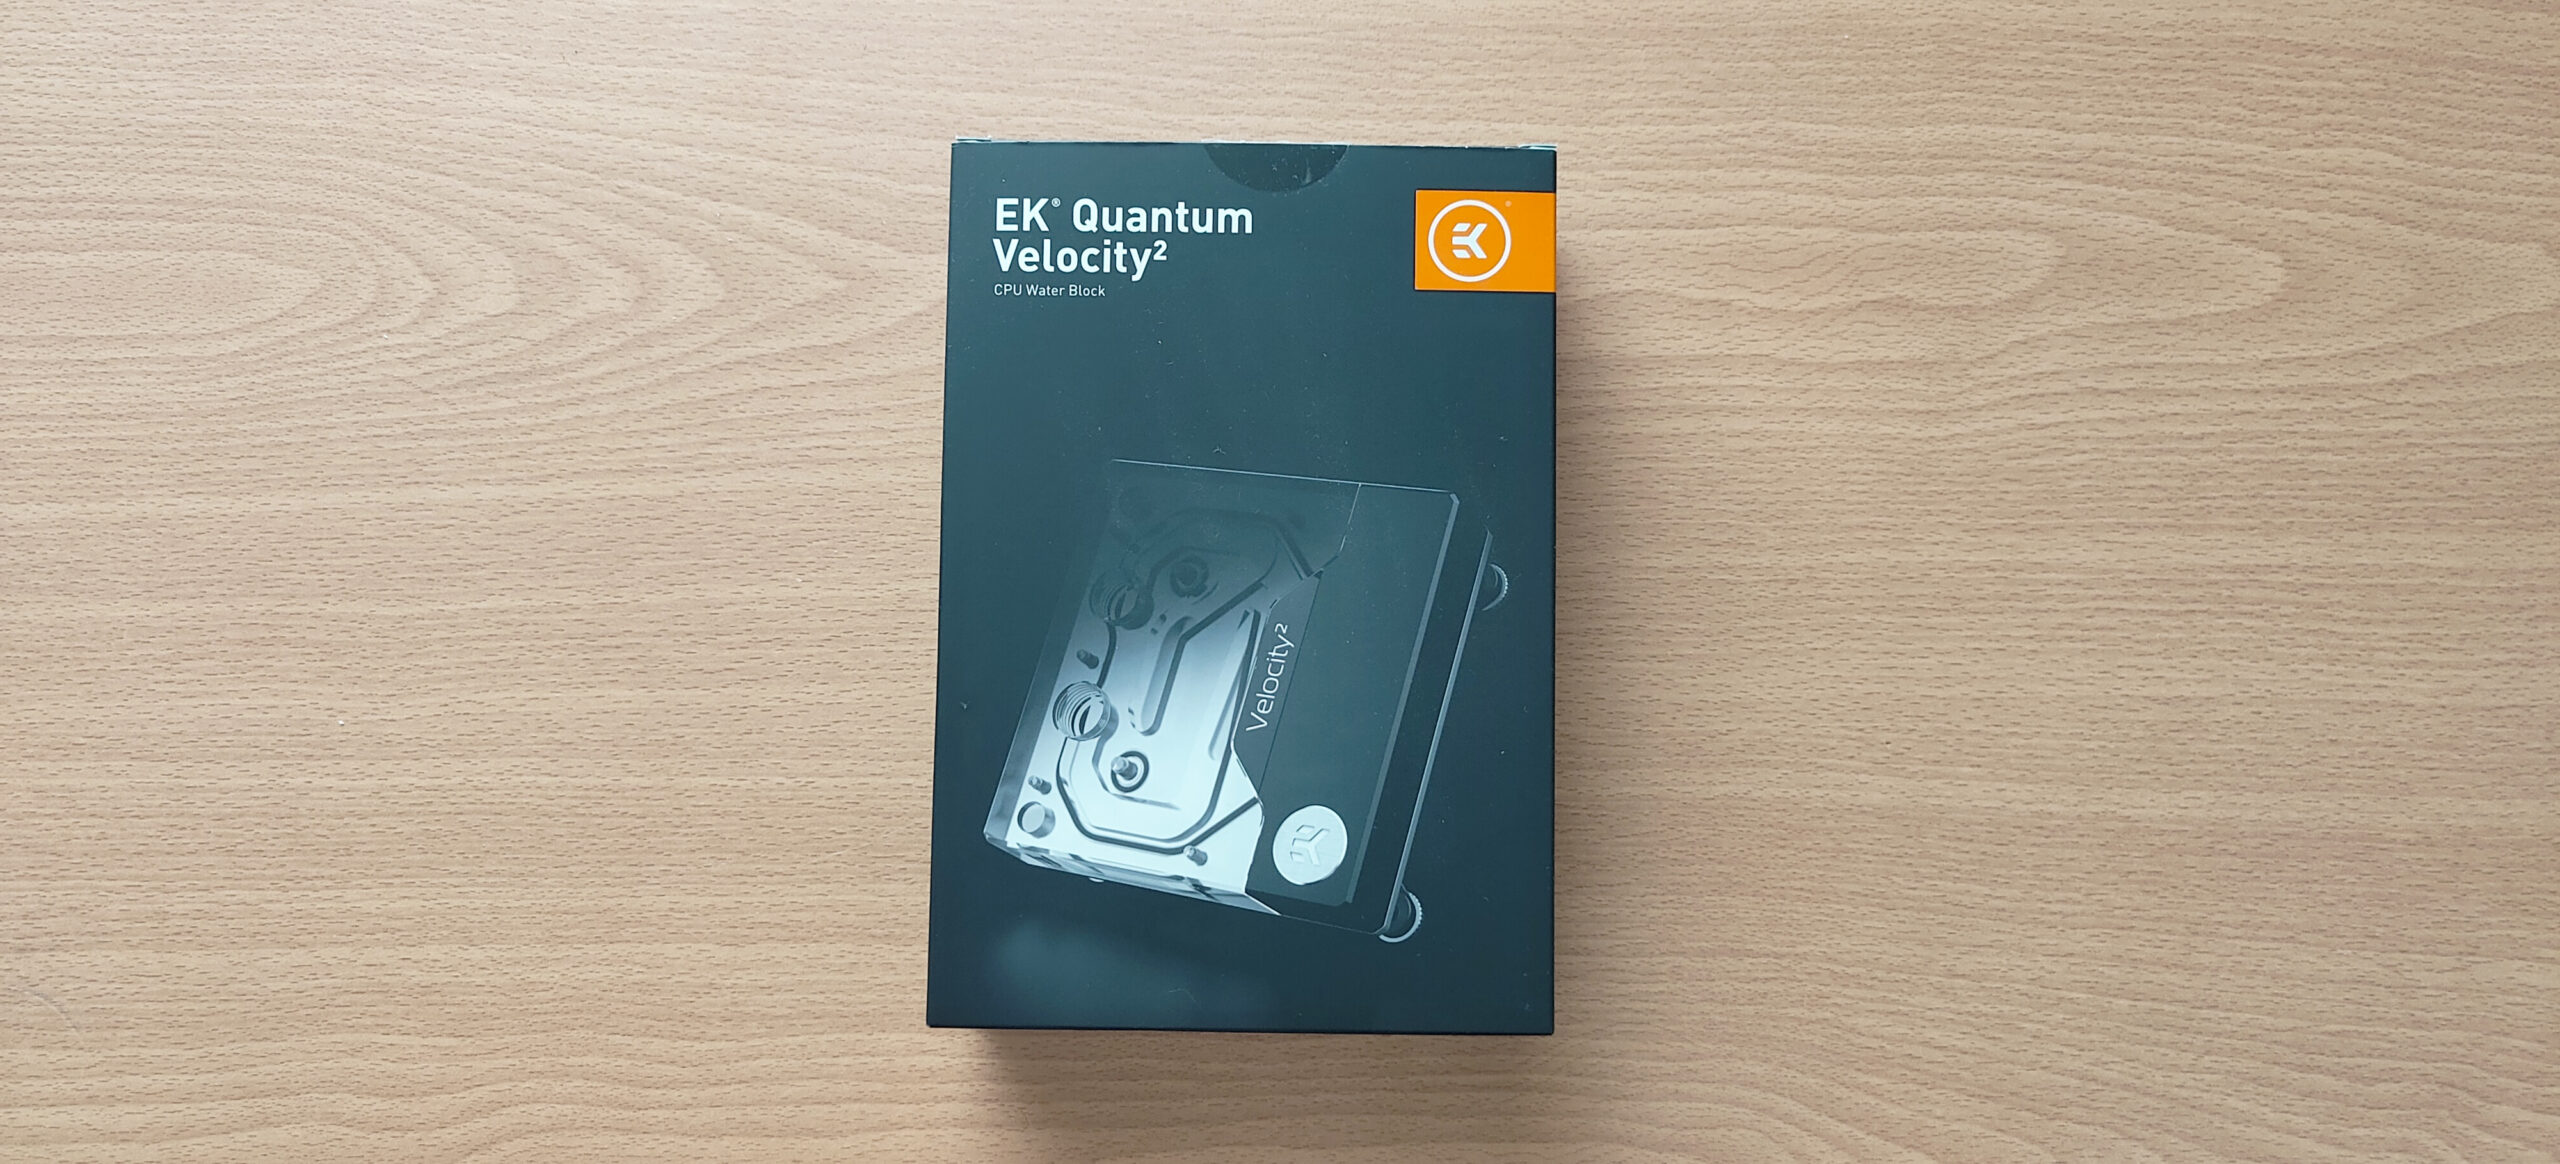 EK-Quantum Velocity² D-RGB Water block Review